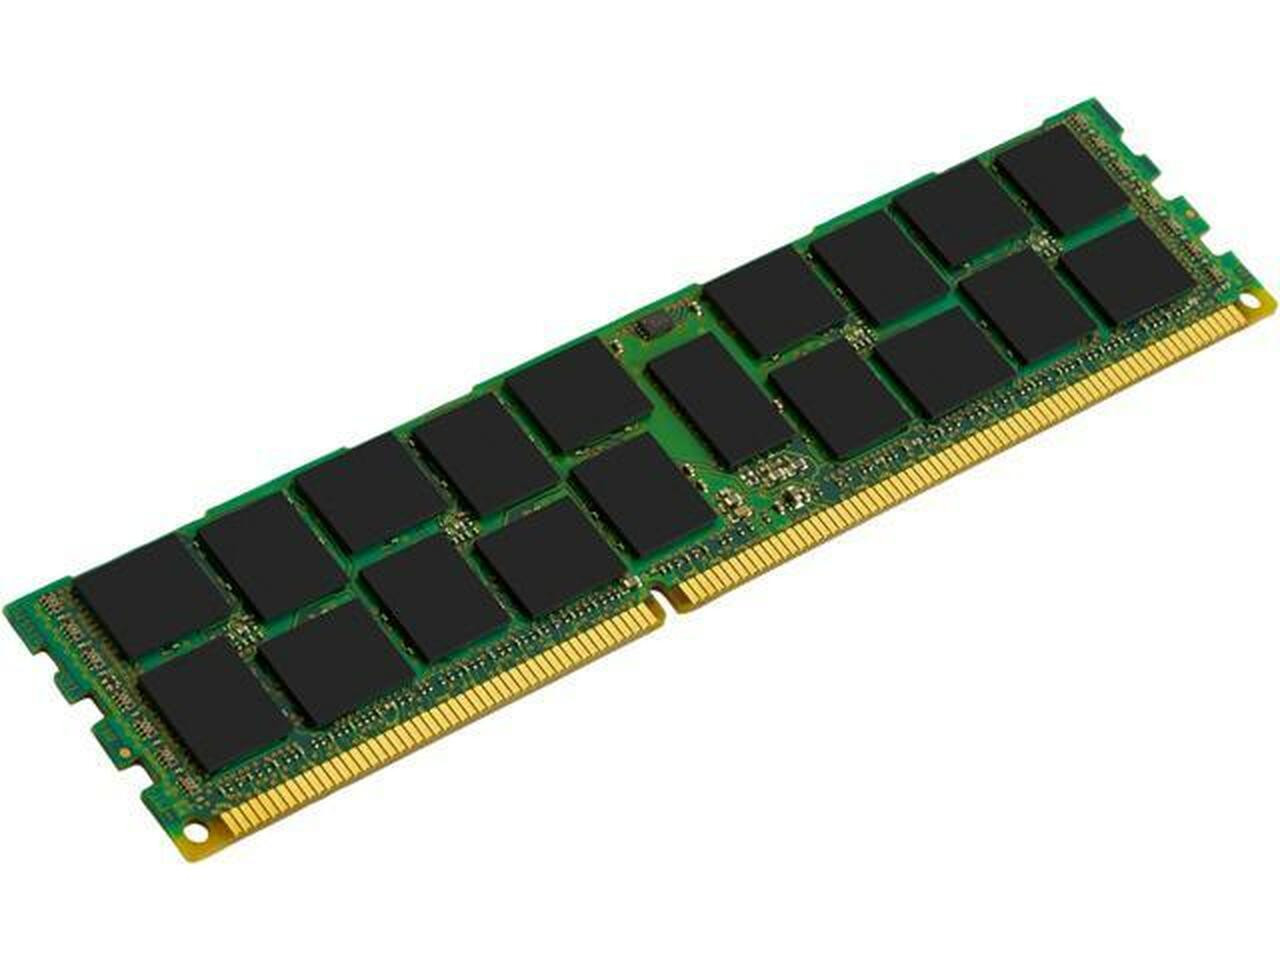 Netpatibles MEM-DR380L-HL04-ER10 8GB DDR3 SDRAM Memory Module - MEMDR380LHL04ER10NPM